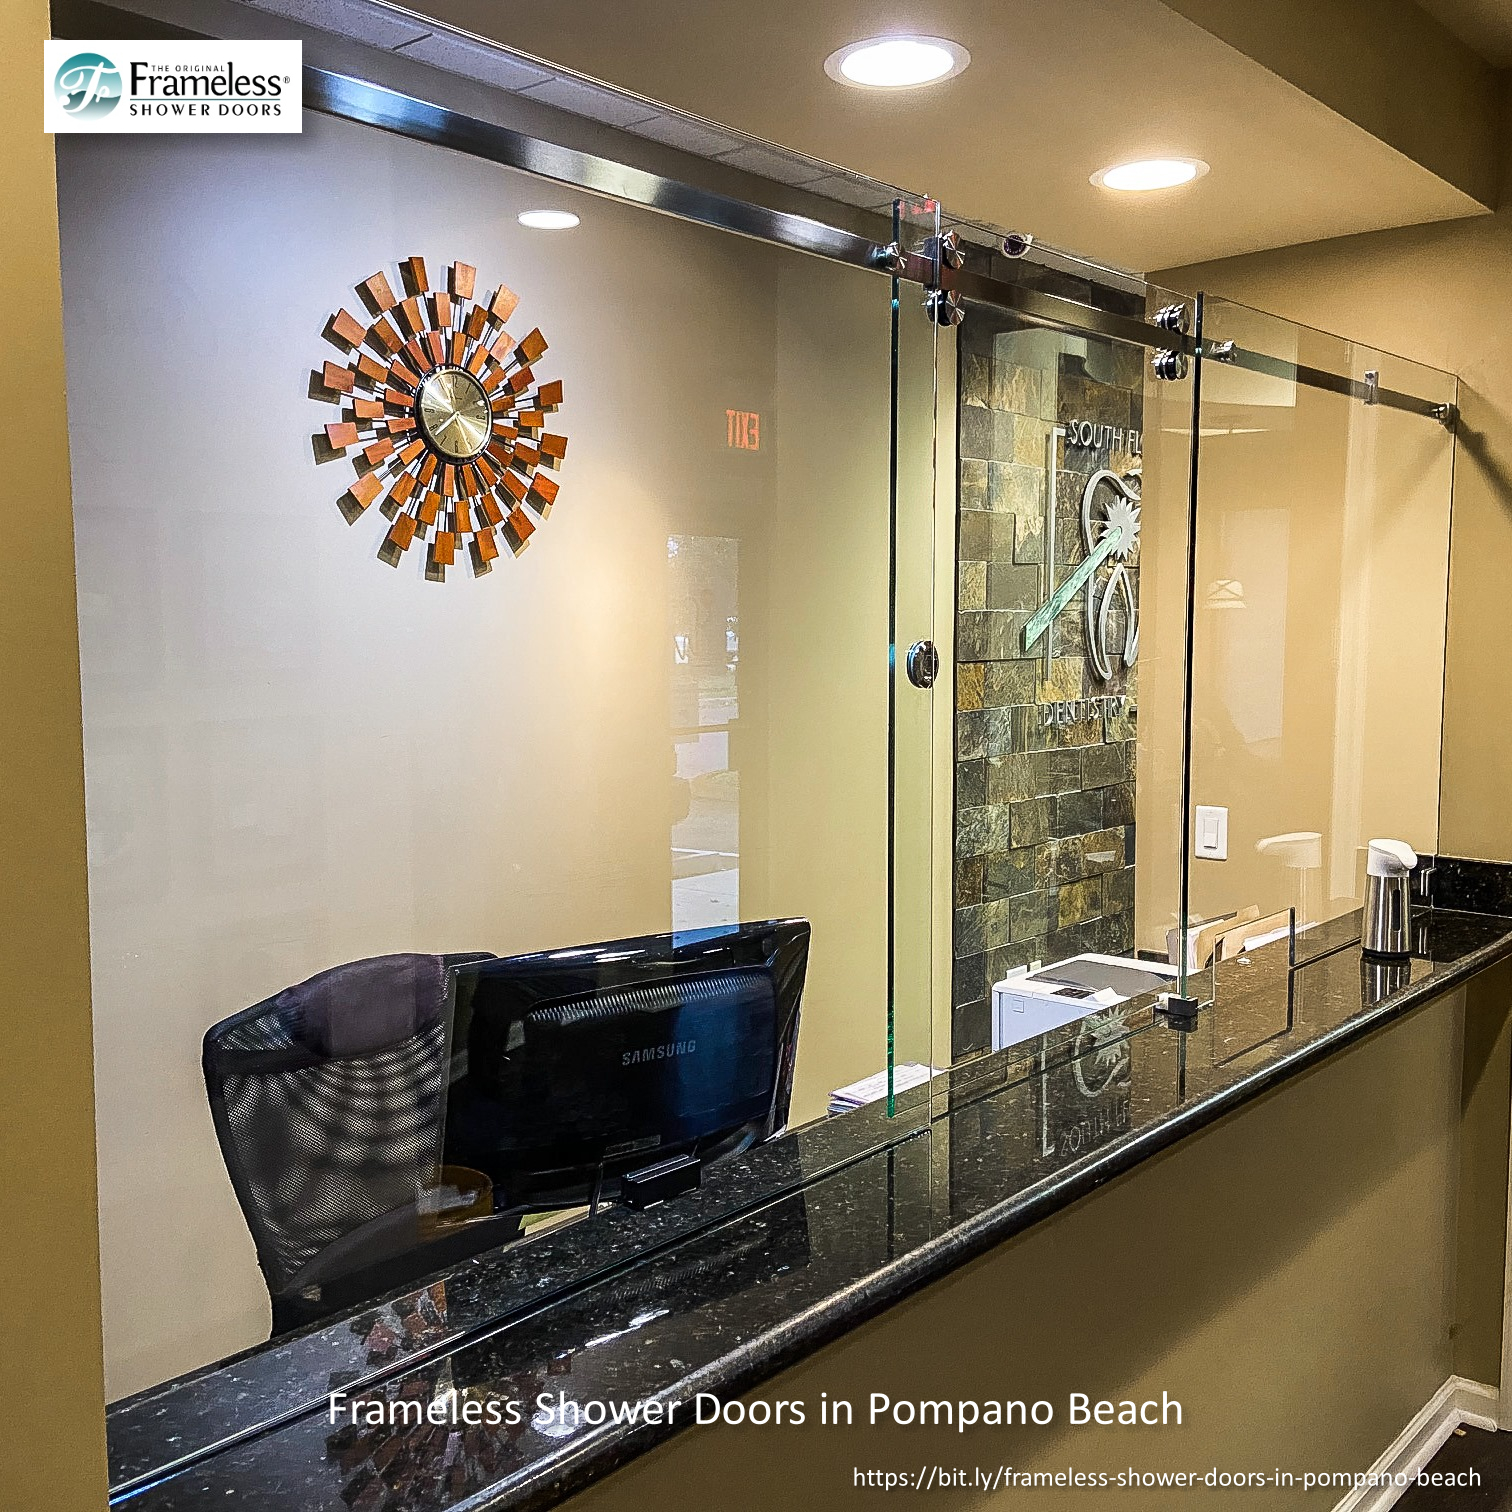 , Top Best Frameless Shower Doors in Pompano Beach, Florida, Frameless Shower Doors